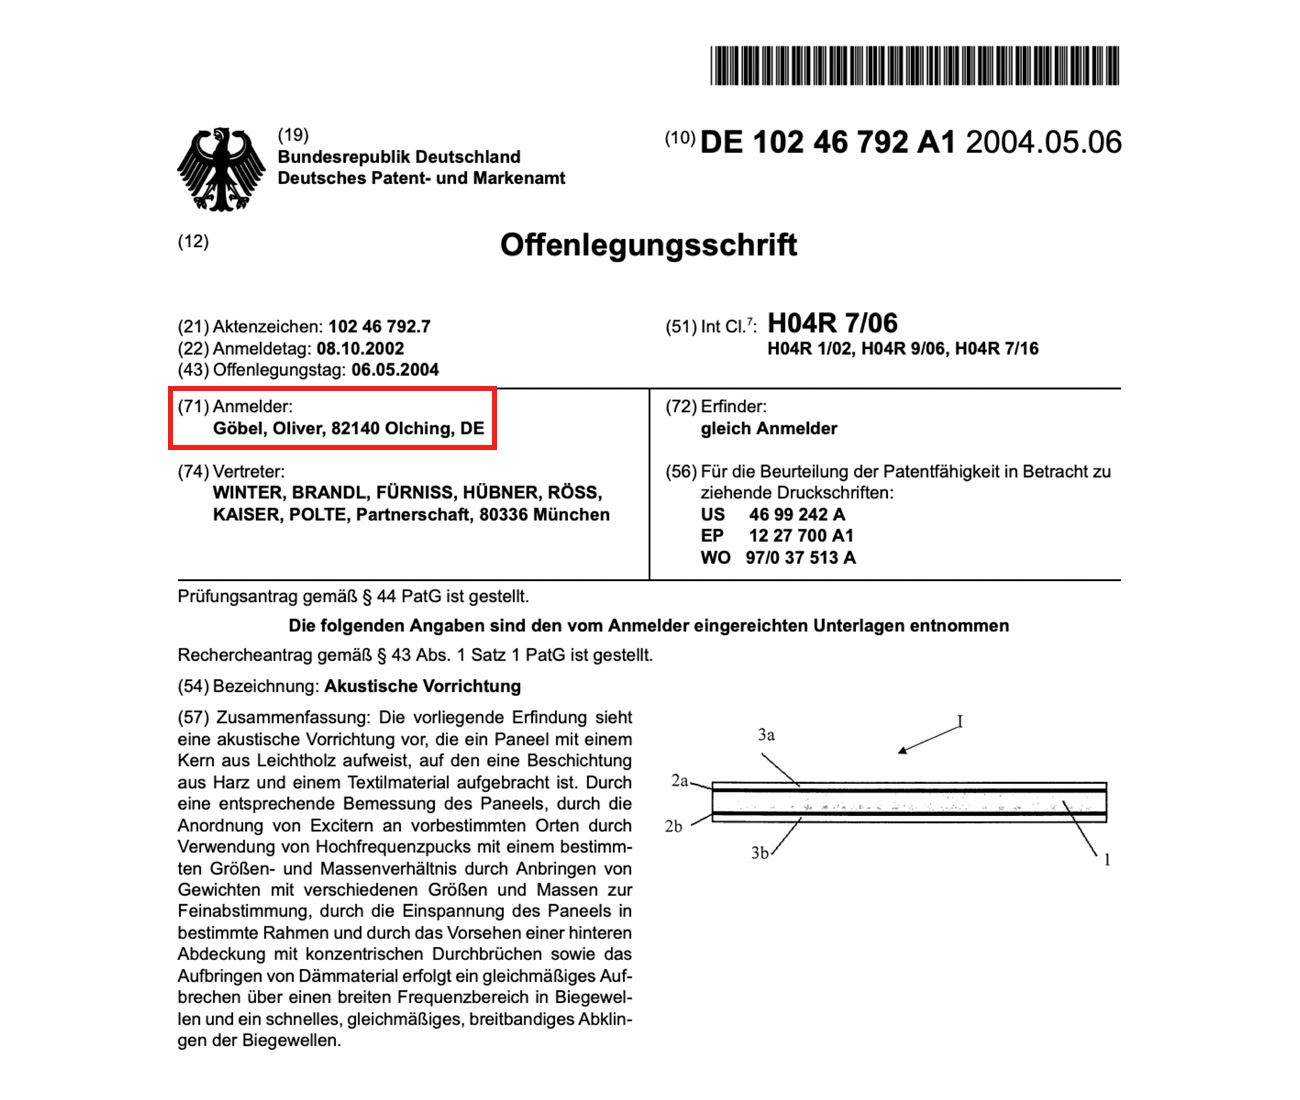 올리버 괴벨의 독일 특허청 문헌